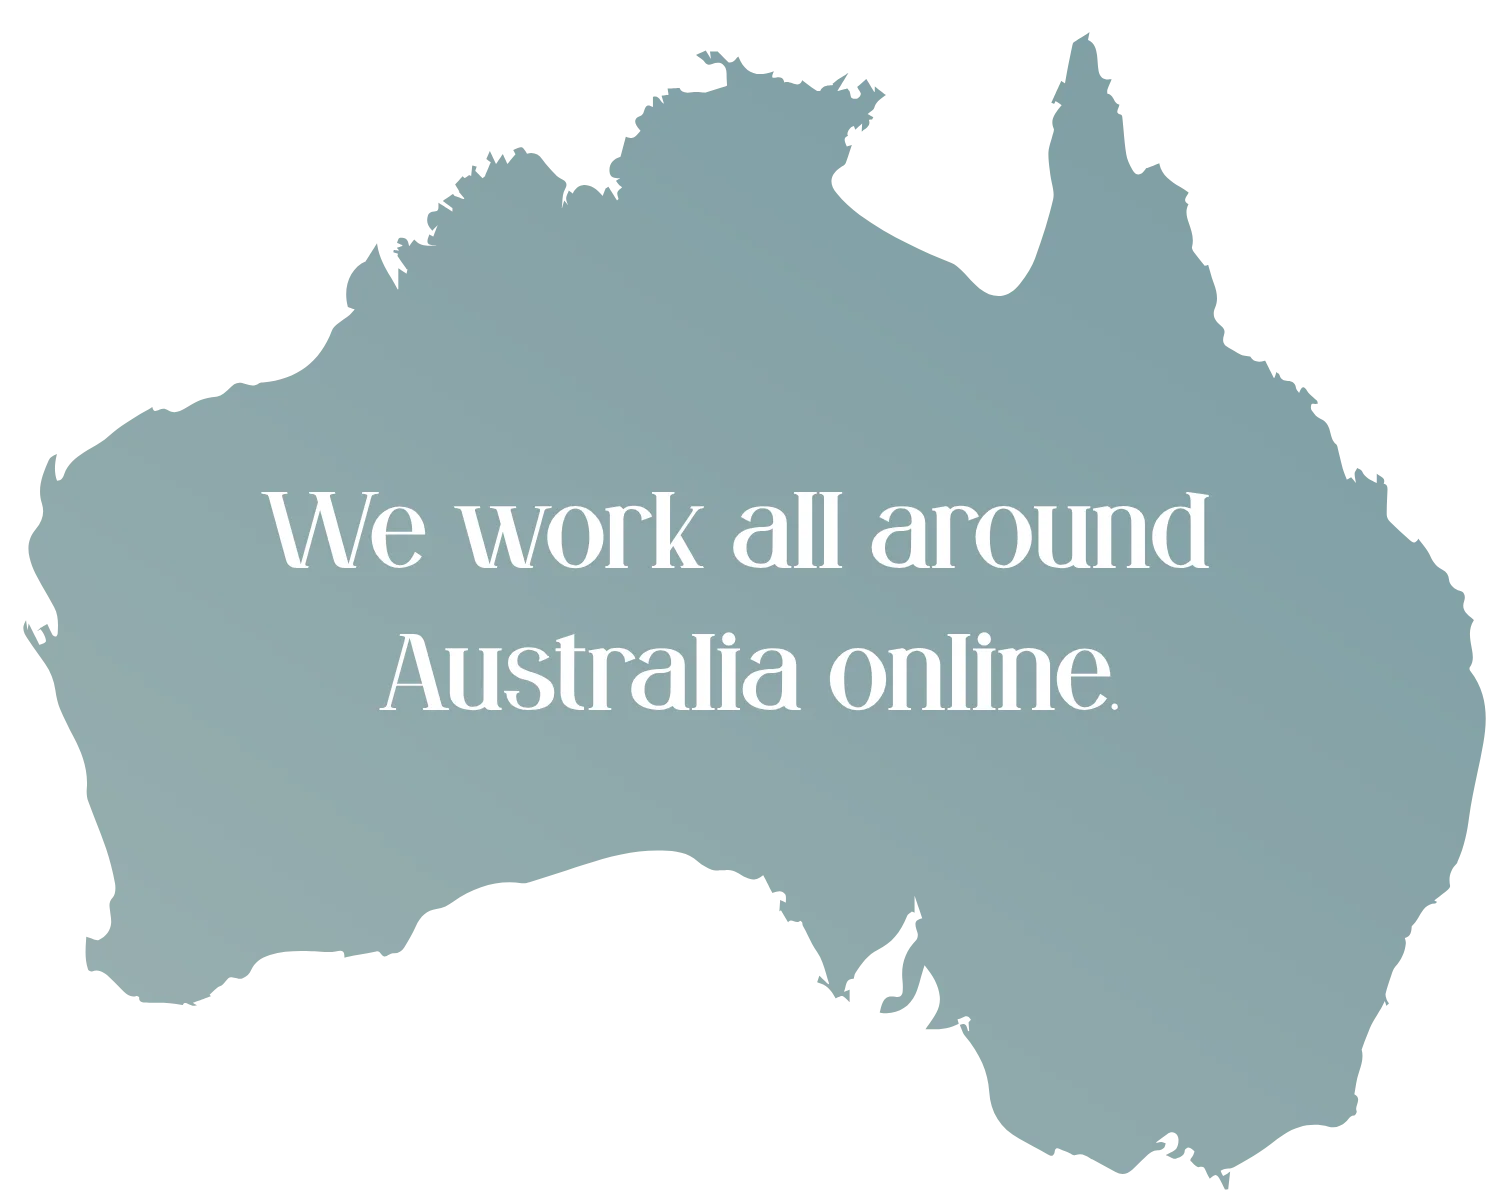 We work all around Australia online.